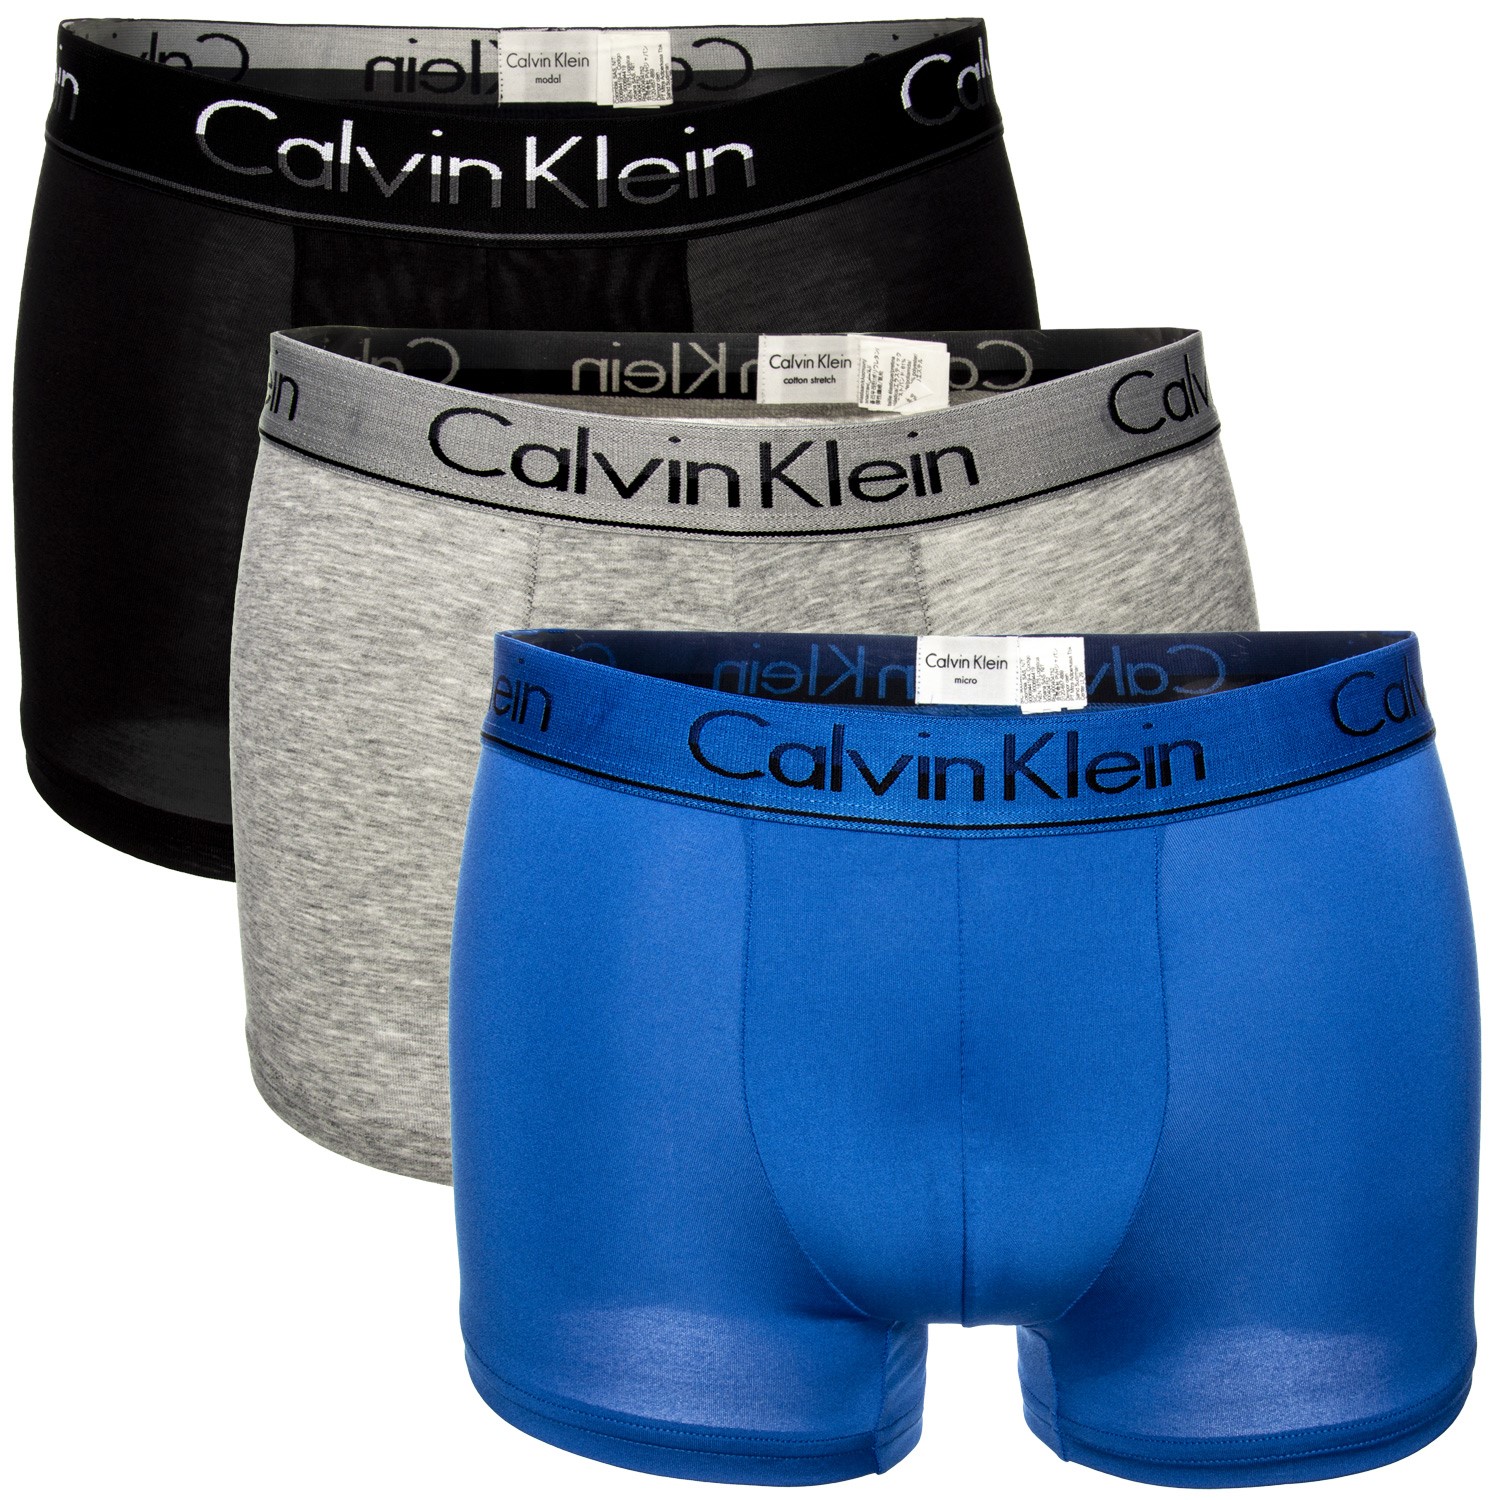 Calvin Klein Variety Pack Trunk